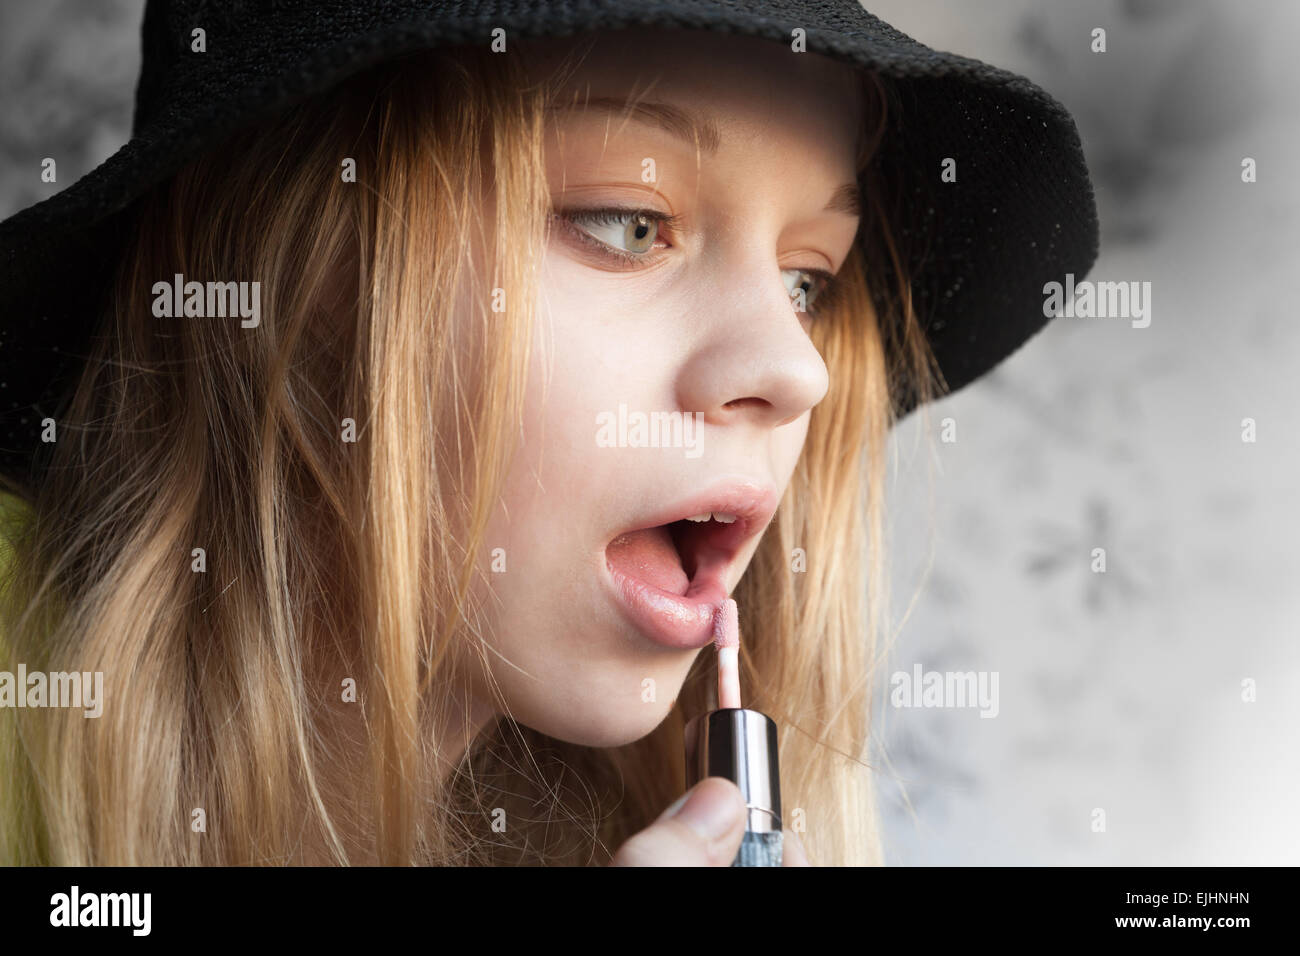 Ritratto di bella bionda ragazza adolescente in black hat facendo compongono con liquido rossetto Foto Stock